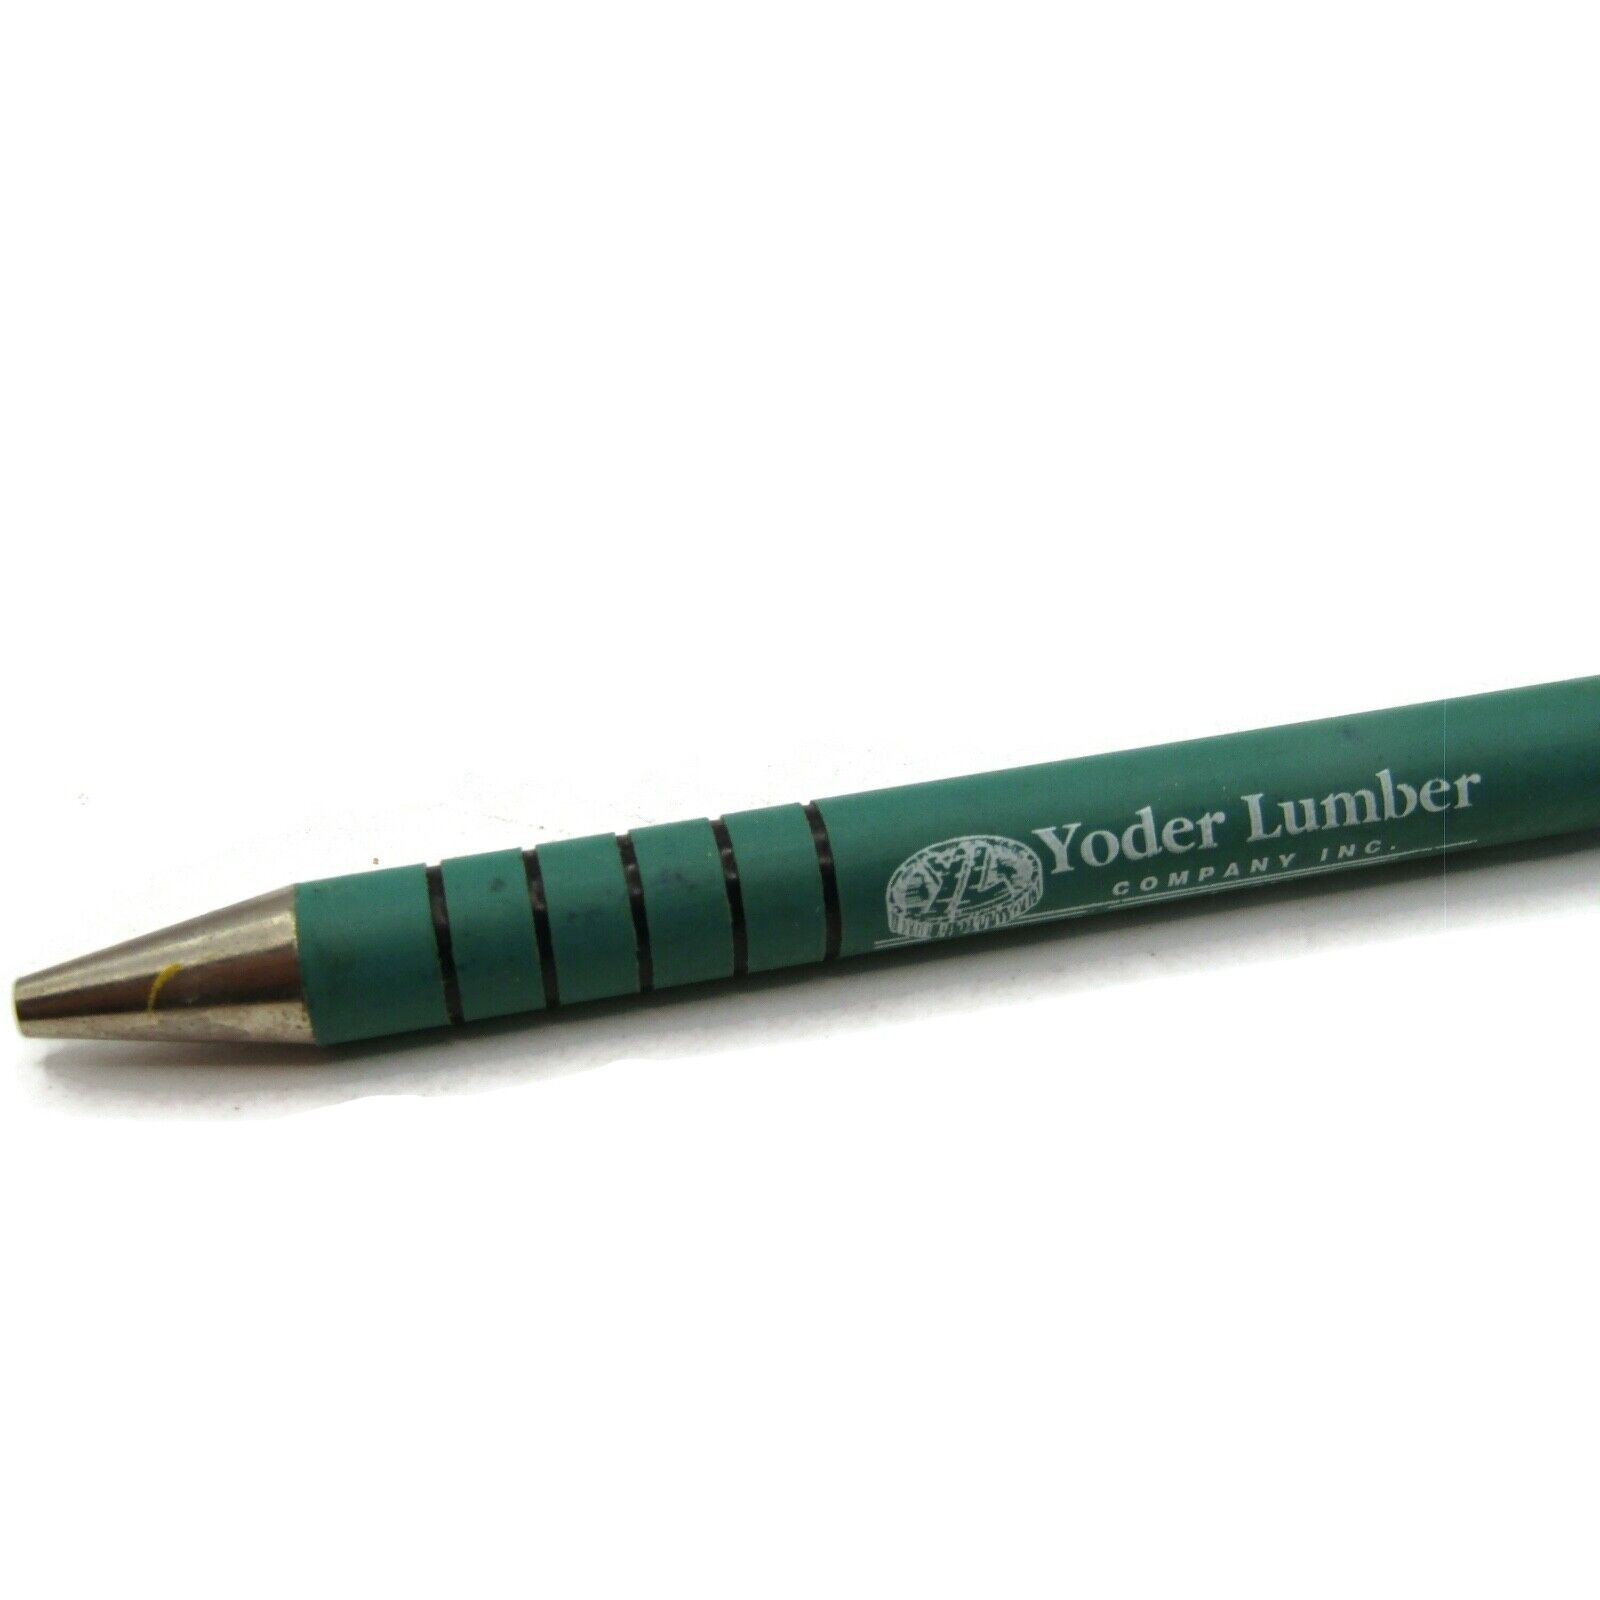 Yoder Lumber Company Inc. Sugarcreek Ohio Lumber Sales Advertising Pen Vintage